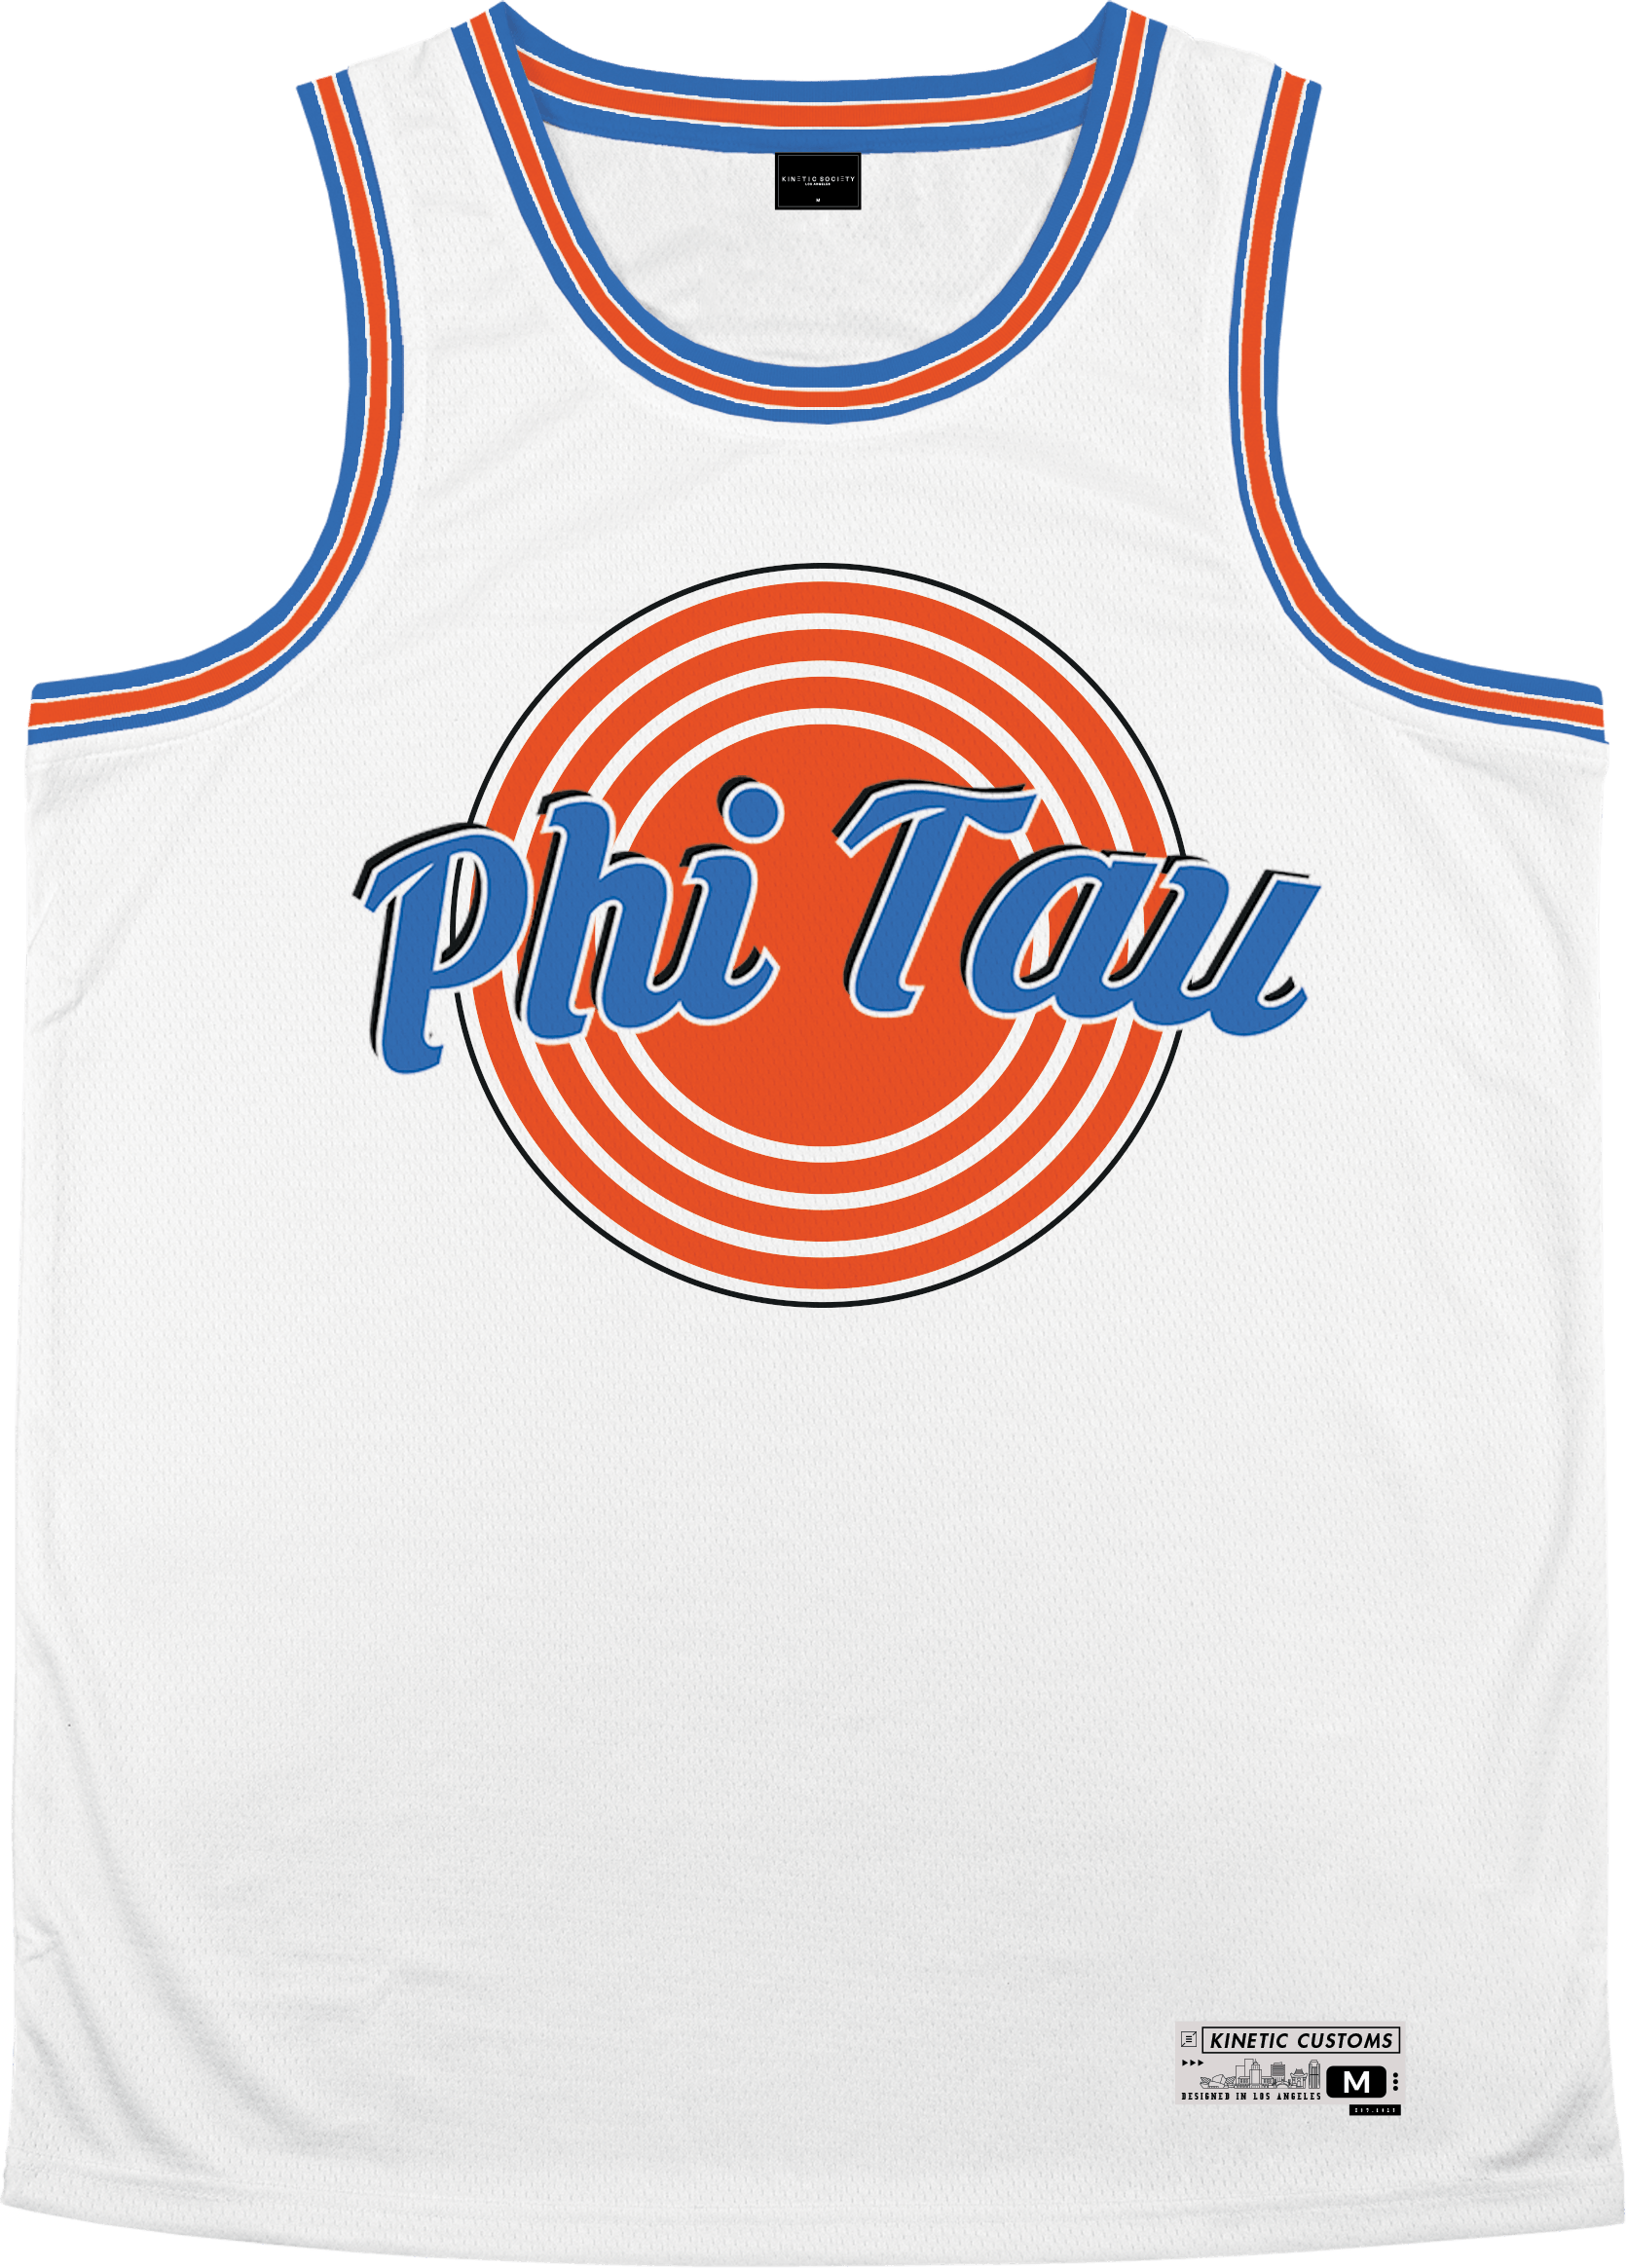 Phi Kappa Tau - Vintage Basketball Jersey Premium Basketball Kinetic Society LLC 